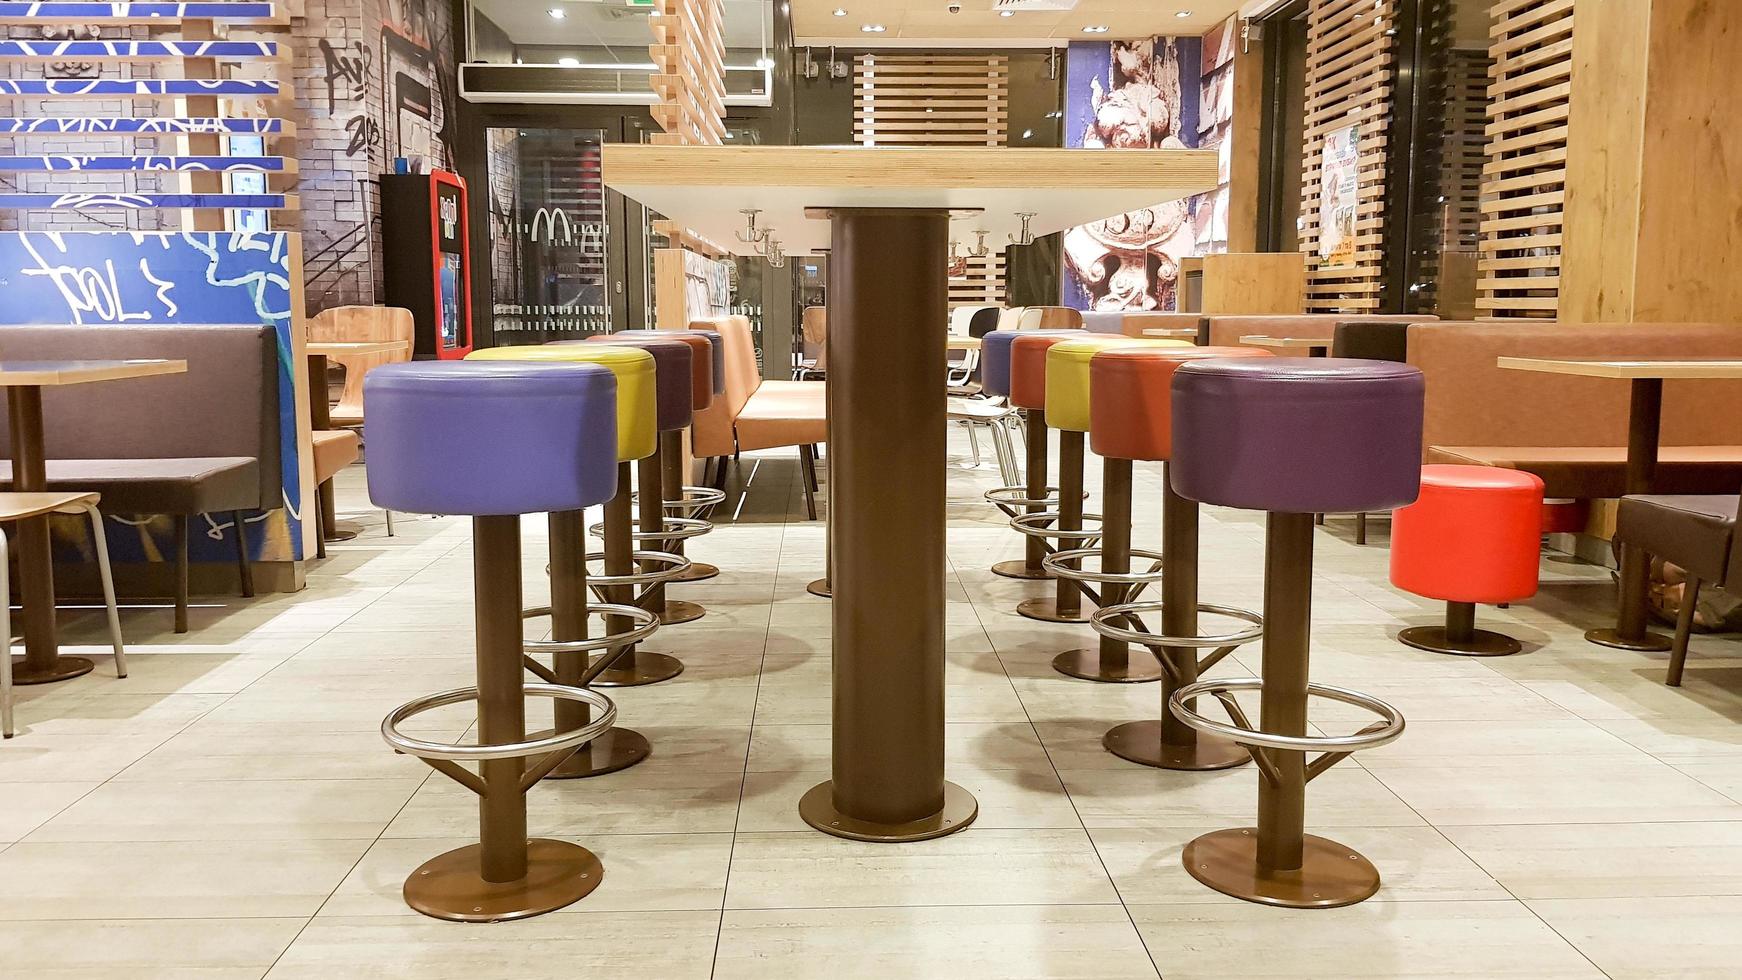 ucrania, kiev - 19 de agosto de 2019. interior del restaurante mcdonald's. mcdonald's es la cadena de restaurantes de comida rápida más grande del mundo con sede en EE. UU. interior con mesas altas y taburetes de bar de colores foto